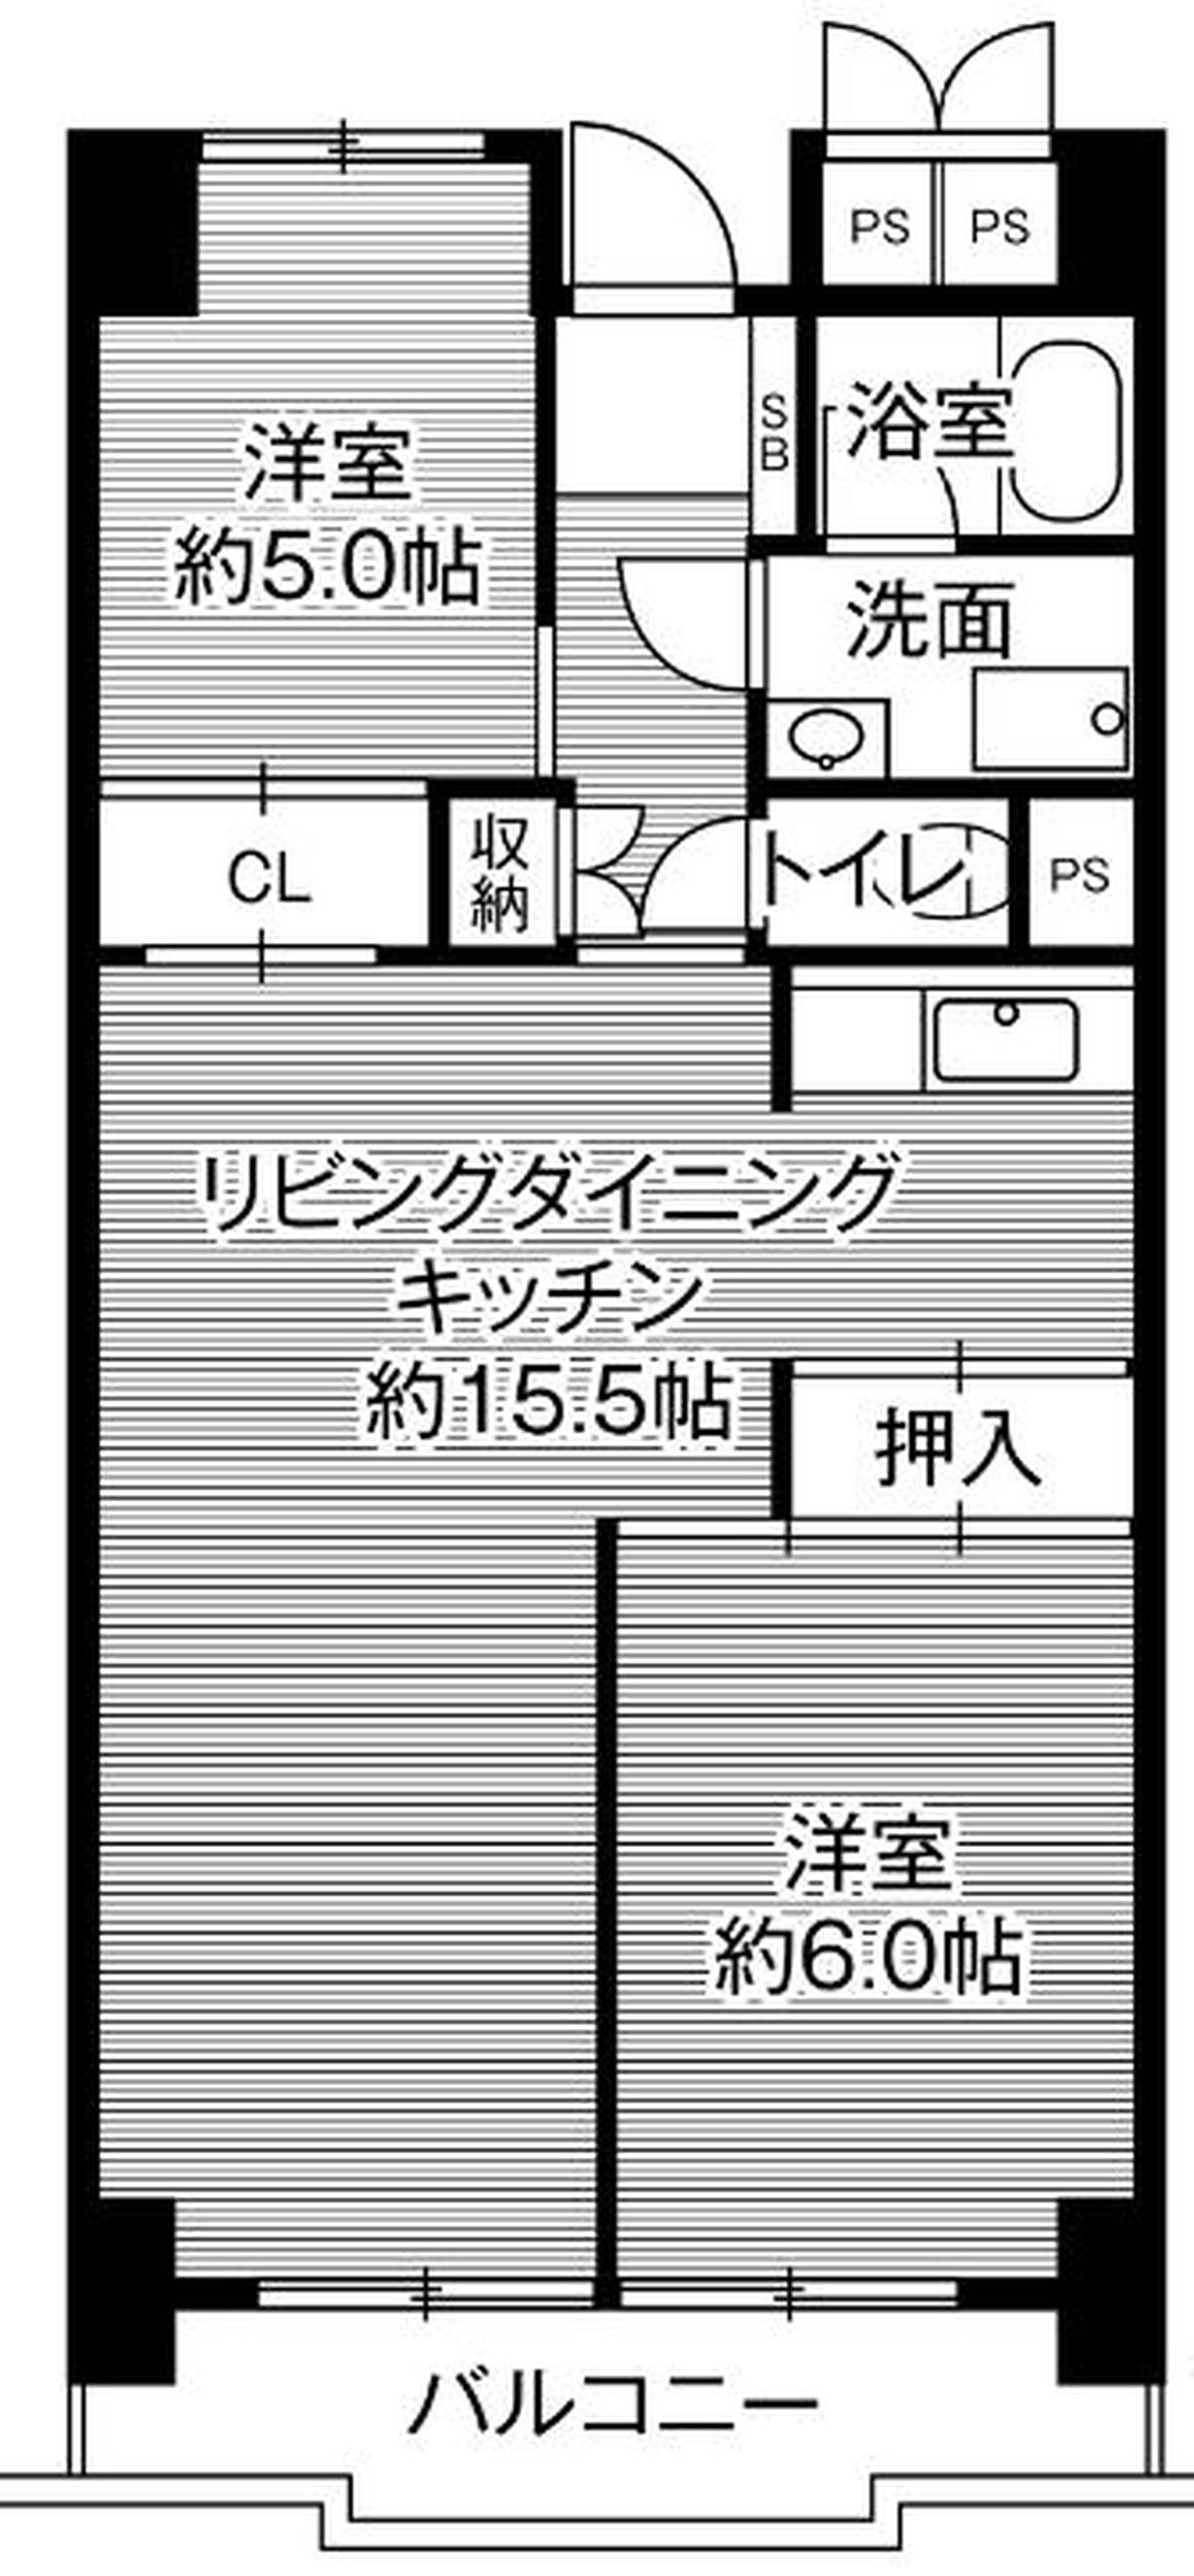 2LDK floorplan of Village House Kiba Tower in Minato-ku